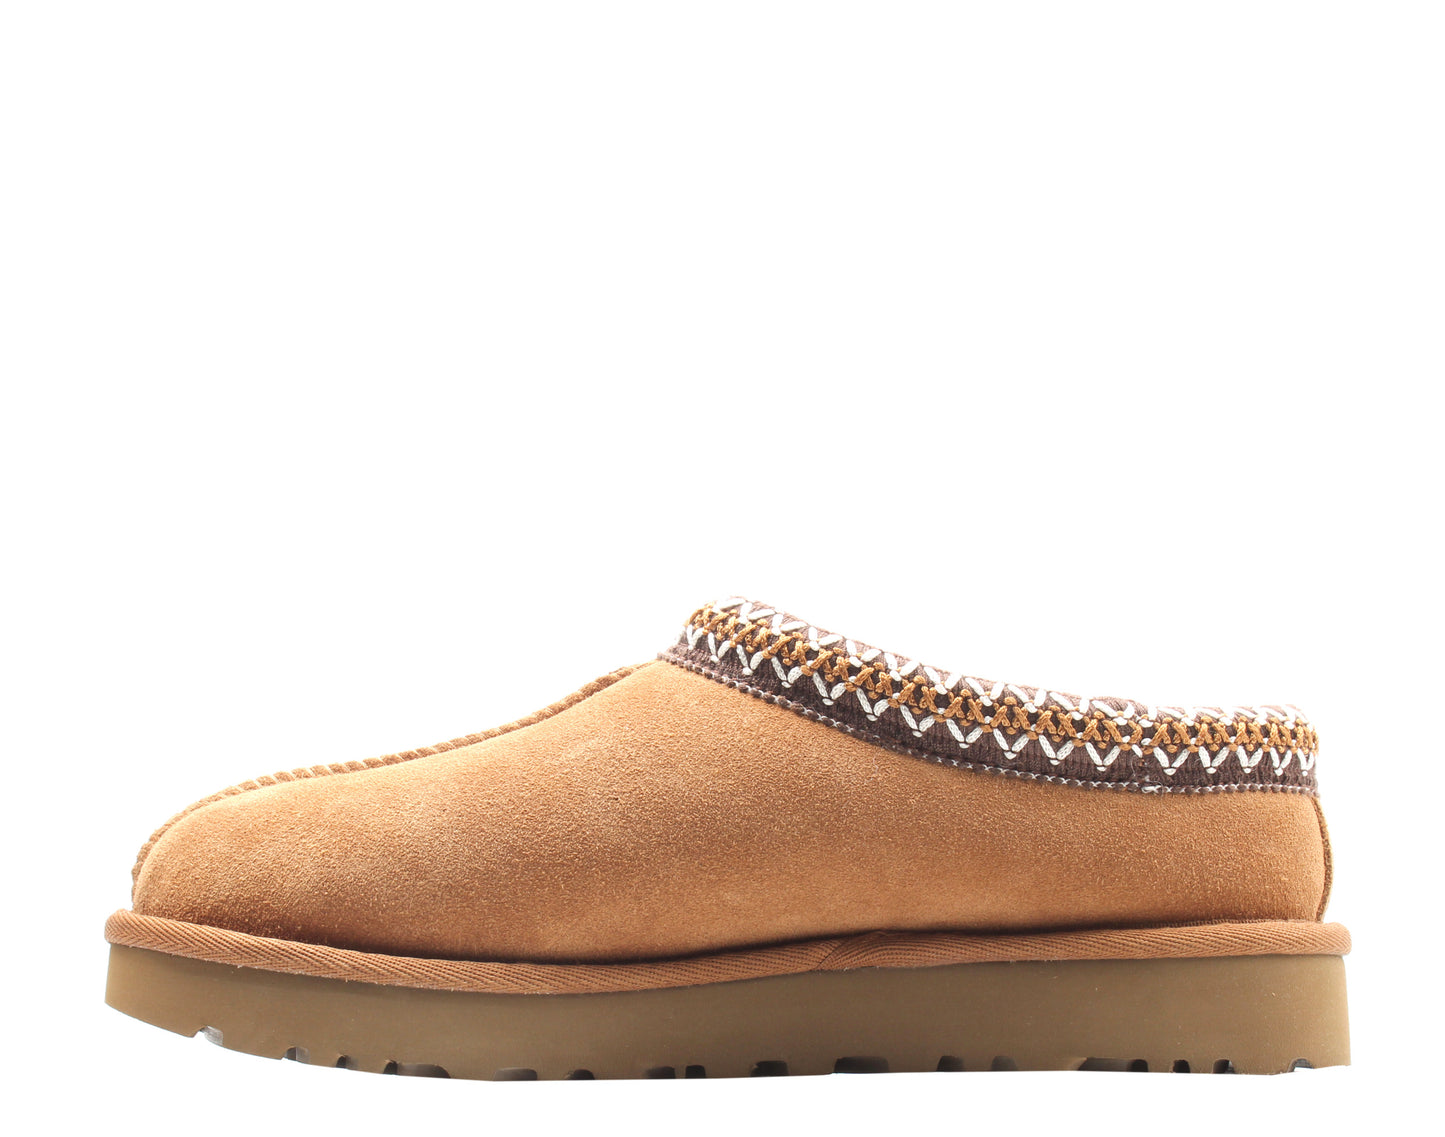 UGG Australia Tasman Chestnut Women's Shoes 5955-CHE